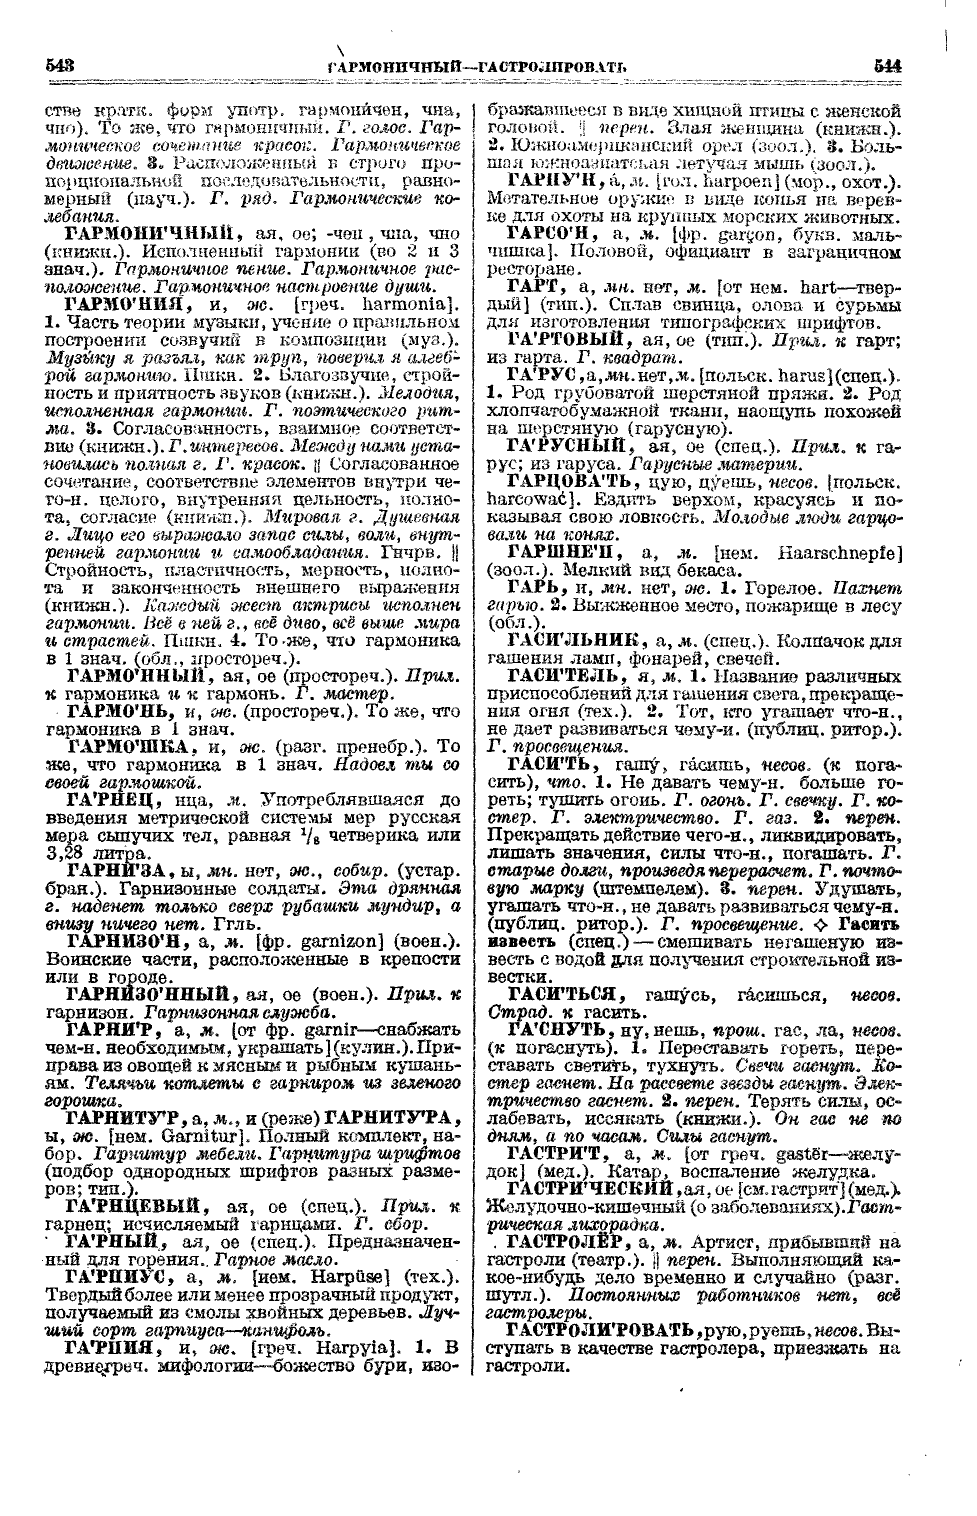 Фотокопия pdf / скан страницы 310 толкового словаря Ушакова (том 1)